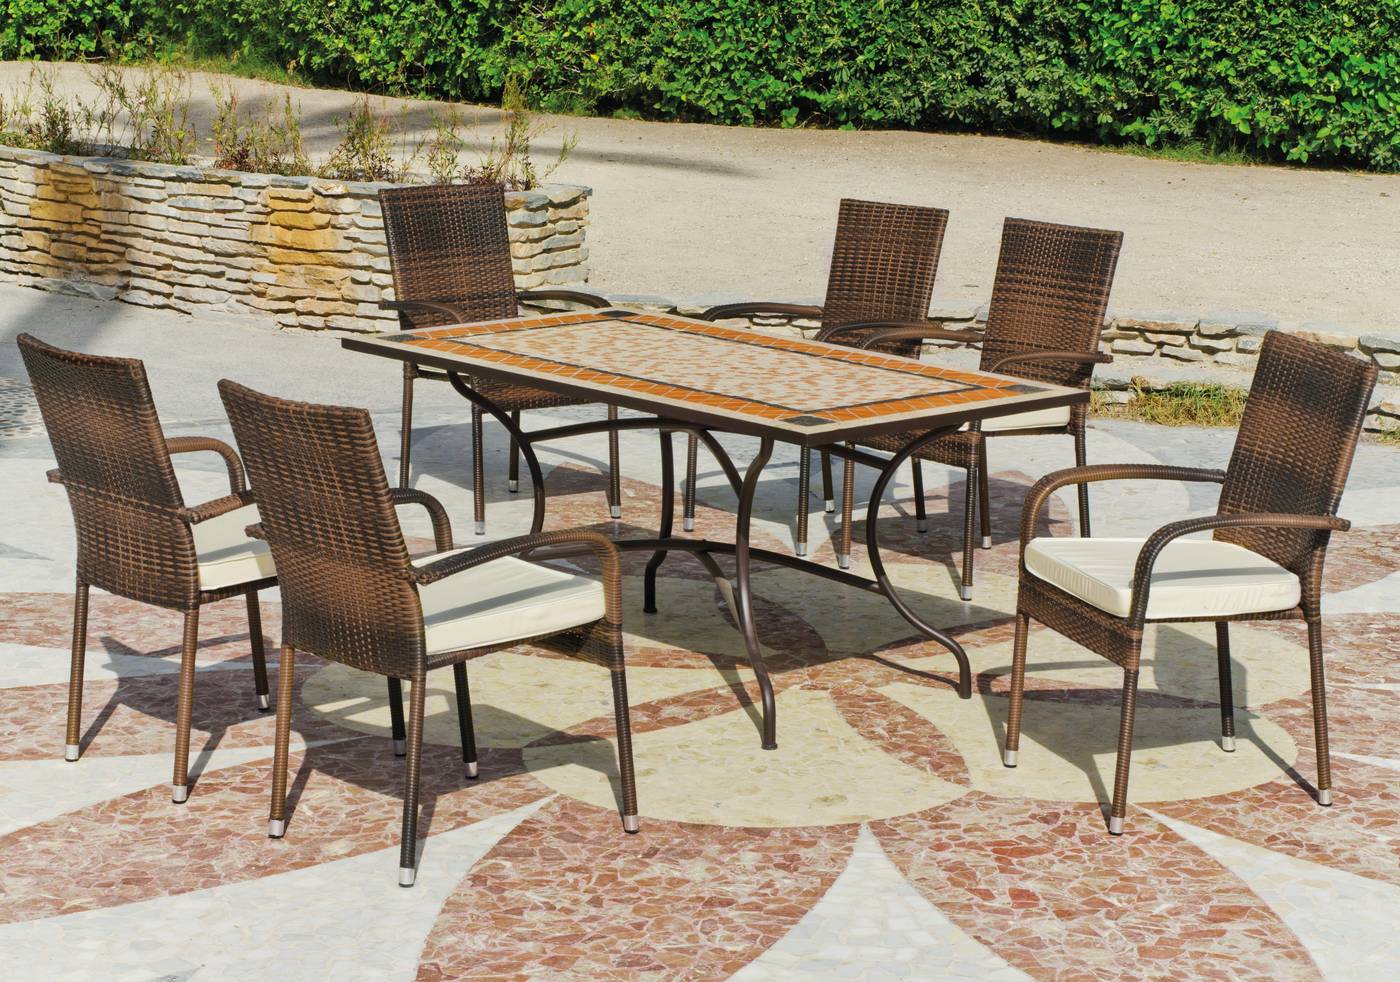 Conjunto para terraza o jardín de forja color bronce: 1 mesa con tablero mosaico + 4 sillones de ratán sintético + 4 cojines.